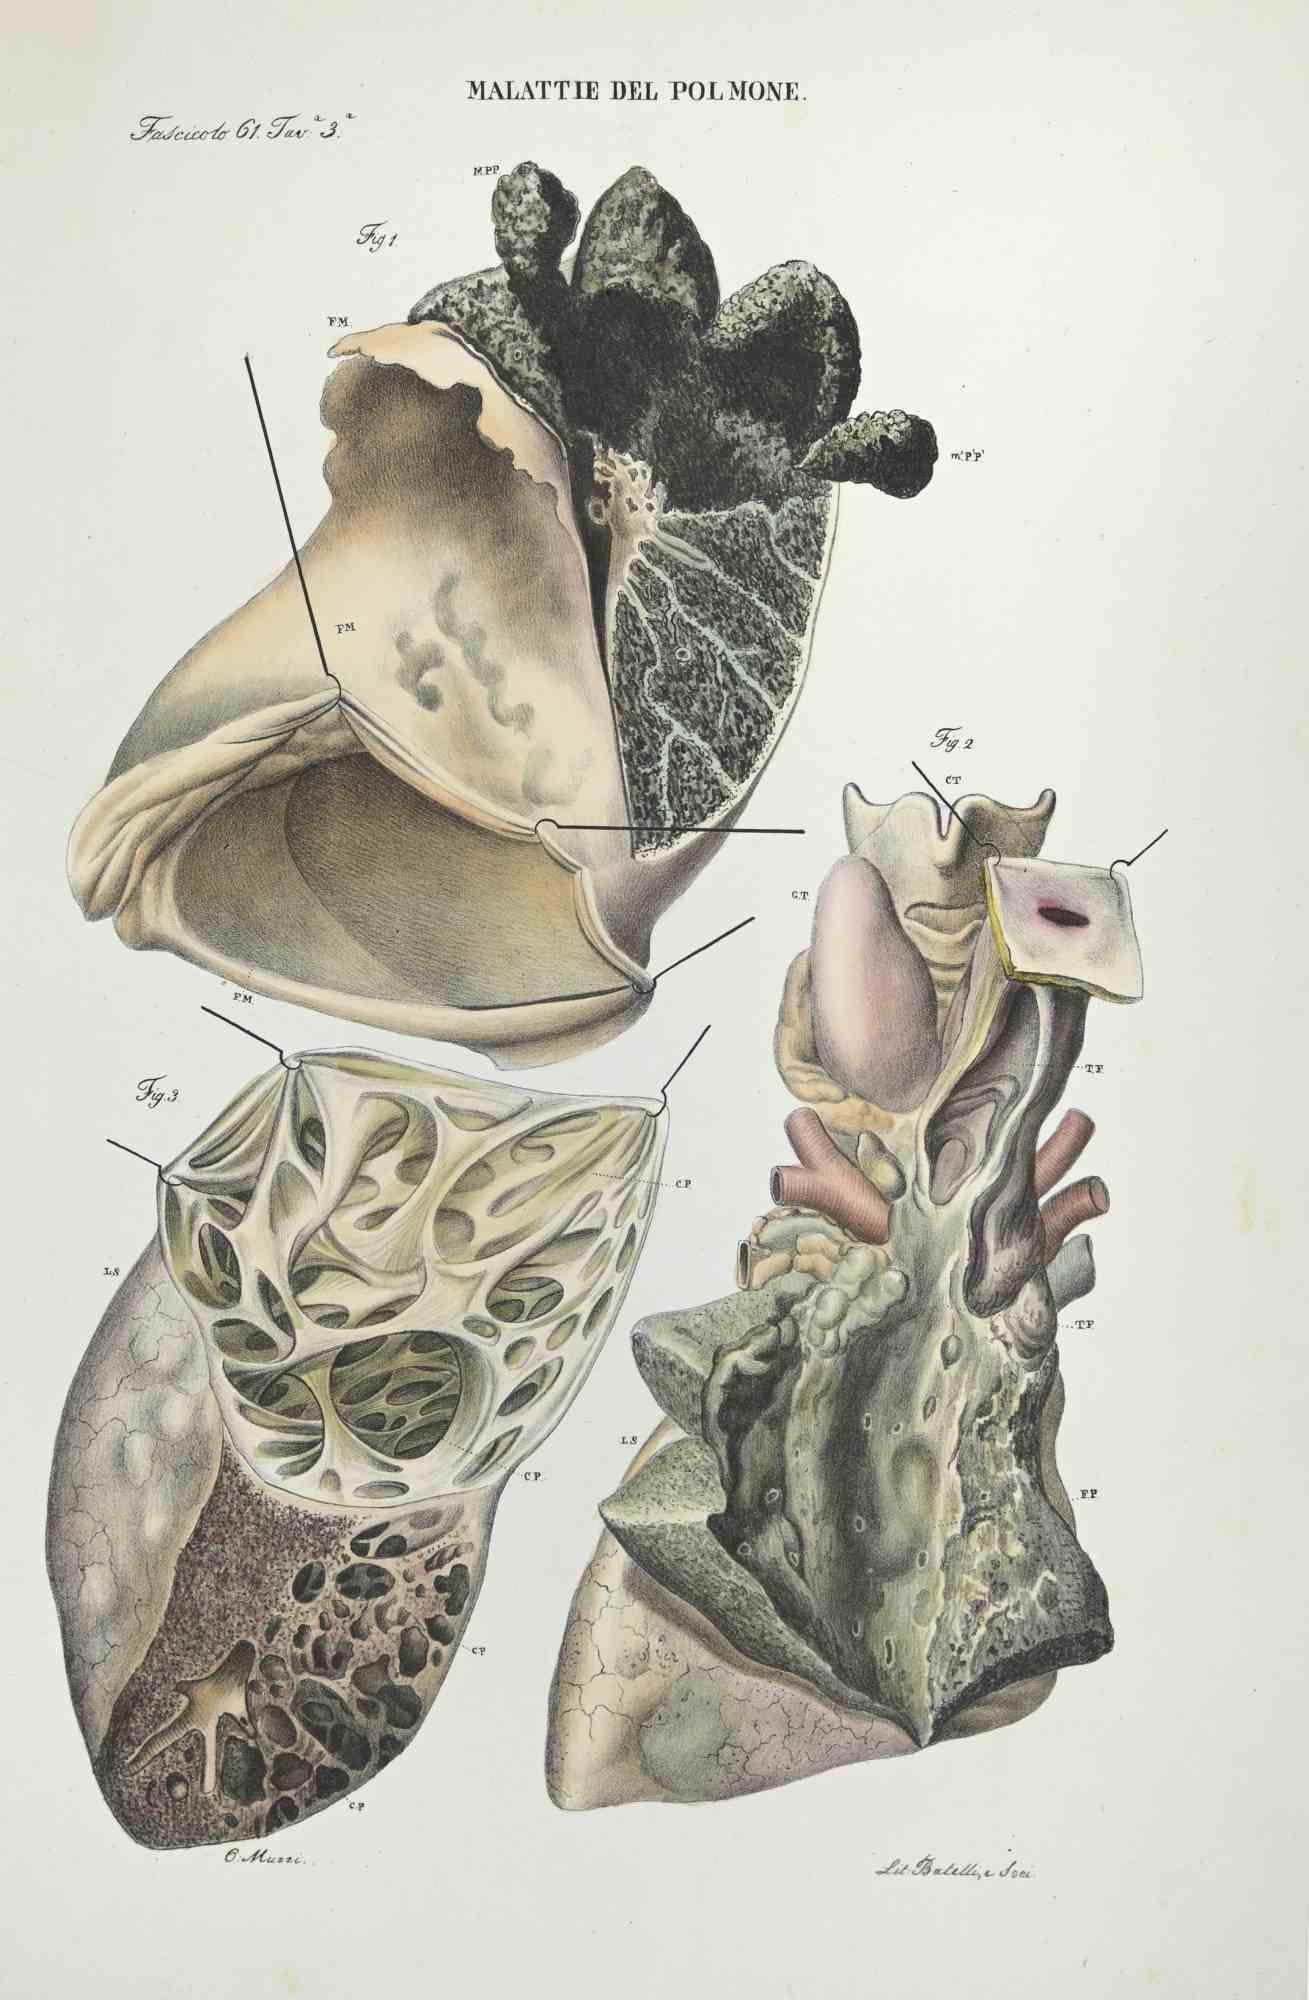 Malattie del cervello è una litografia colorata a mano da Ottavio Muzzi per l'edizione di Antoine Chazal, Anatomia umana, Stamperia Batelli e Ridolfi, 1843.

L'opera appartiene all'Atlante generale della anatomia patologica del corpo umano di Jean